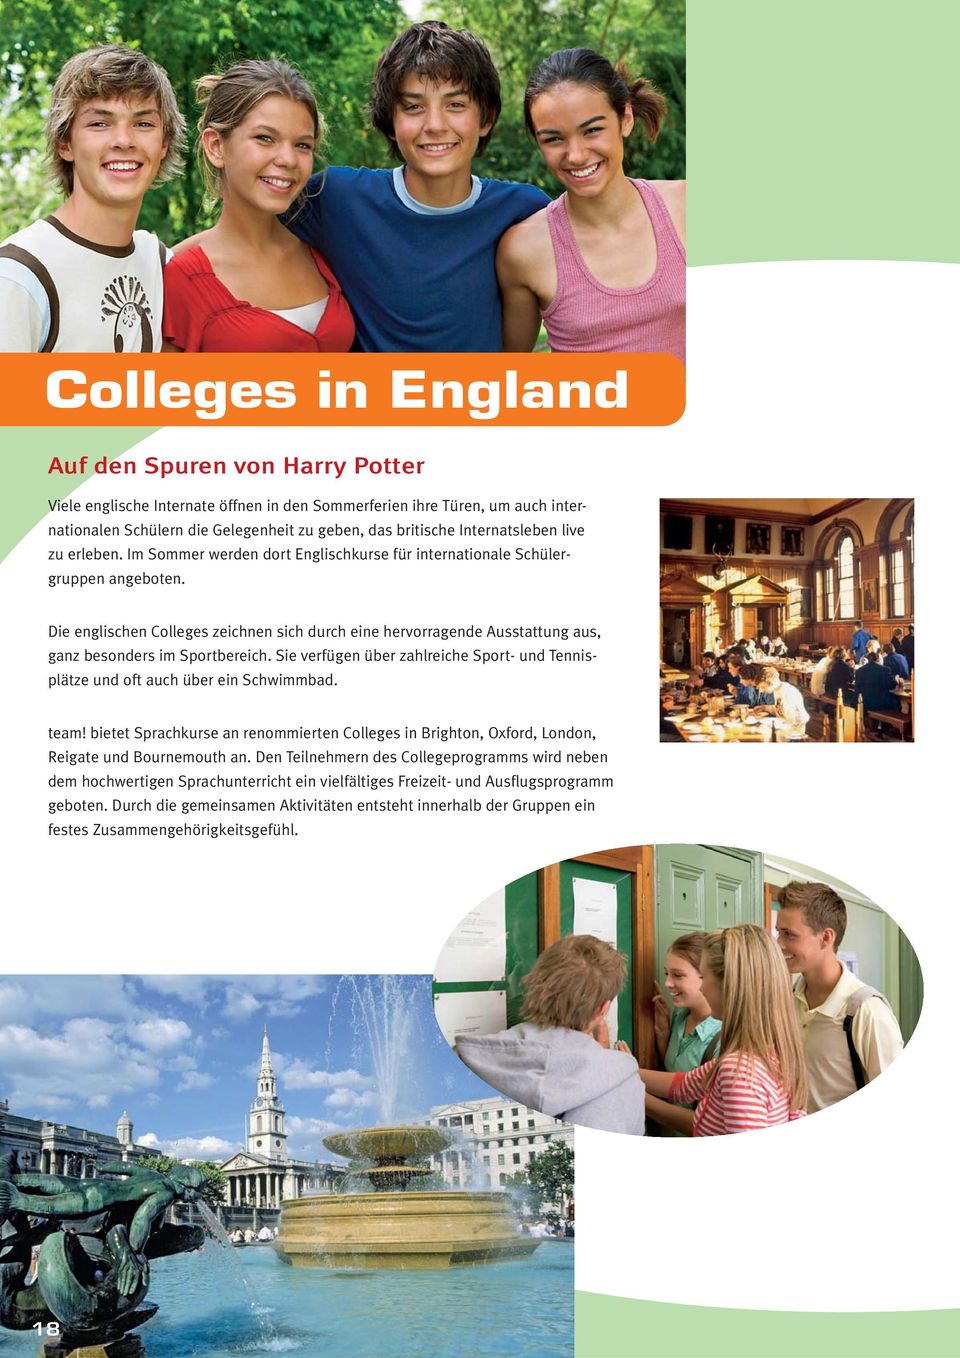 Die englischen Colleges zeichnen sich durch eine hervorragende Ausstattung aus, ganz besonders im Sportbereich. Sie verfügen über zahlreiche Sport- und Tennisplätze und oft auch über ein Schwimmbad.